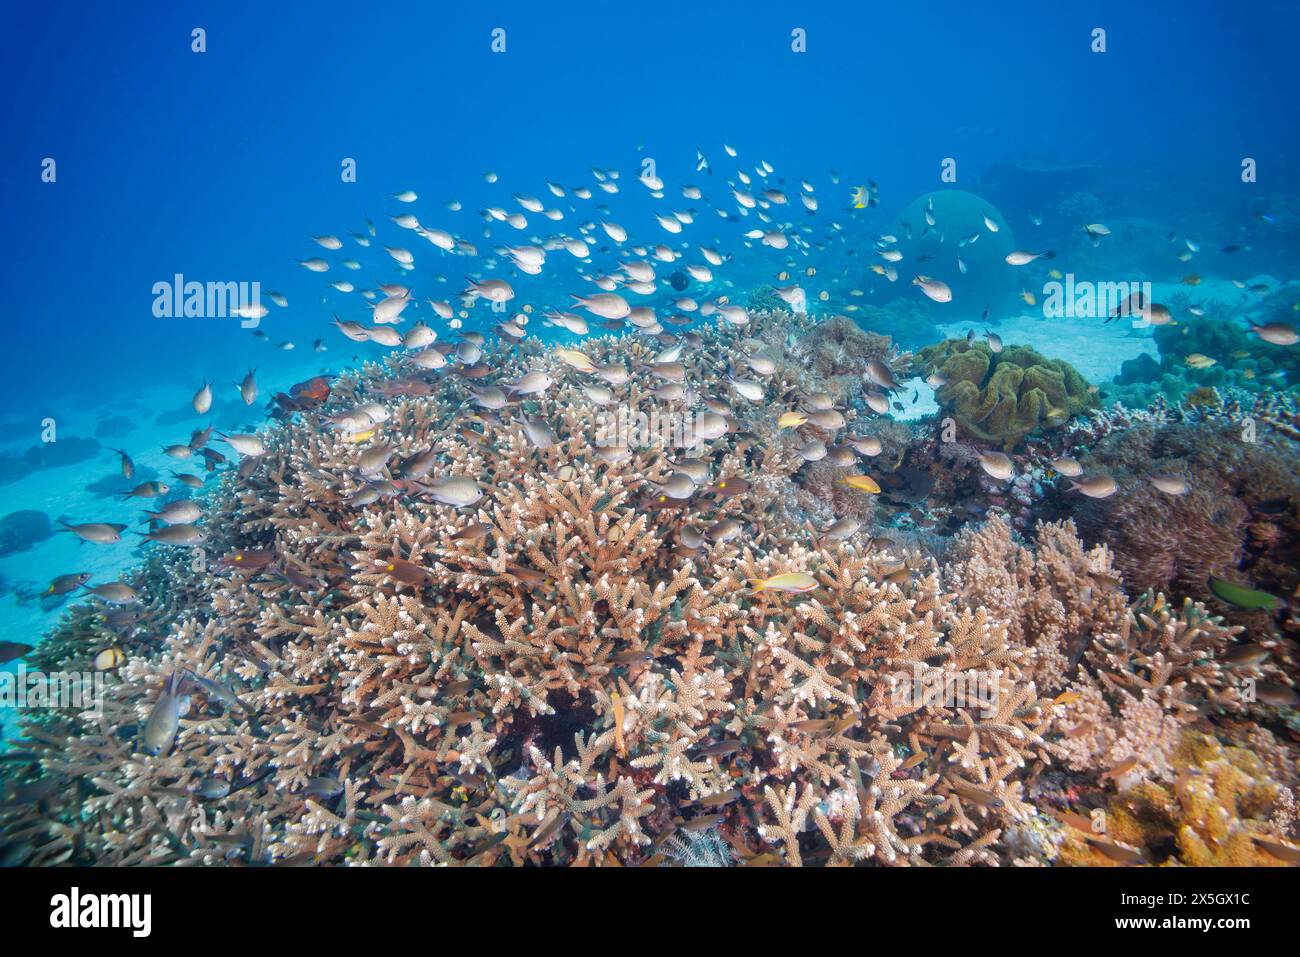 Un récif corallien dur ainsi que divers poissons de récif scolaire dominent cette scène sous-marine, off com en république démocratique du Timor-Leste. Banque D'Images